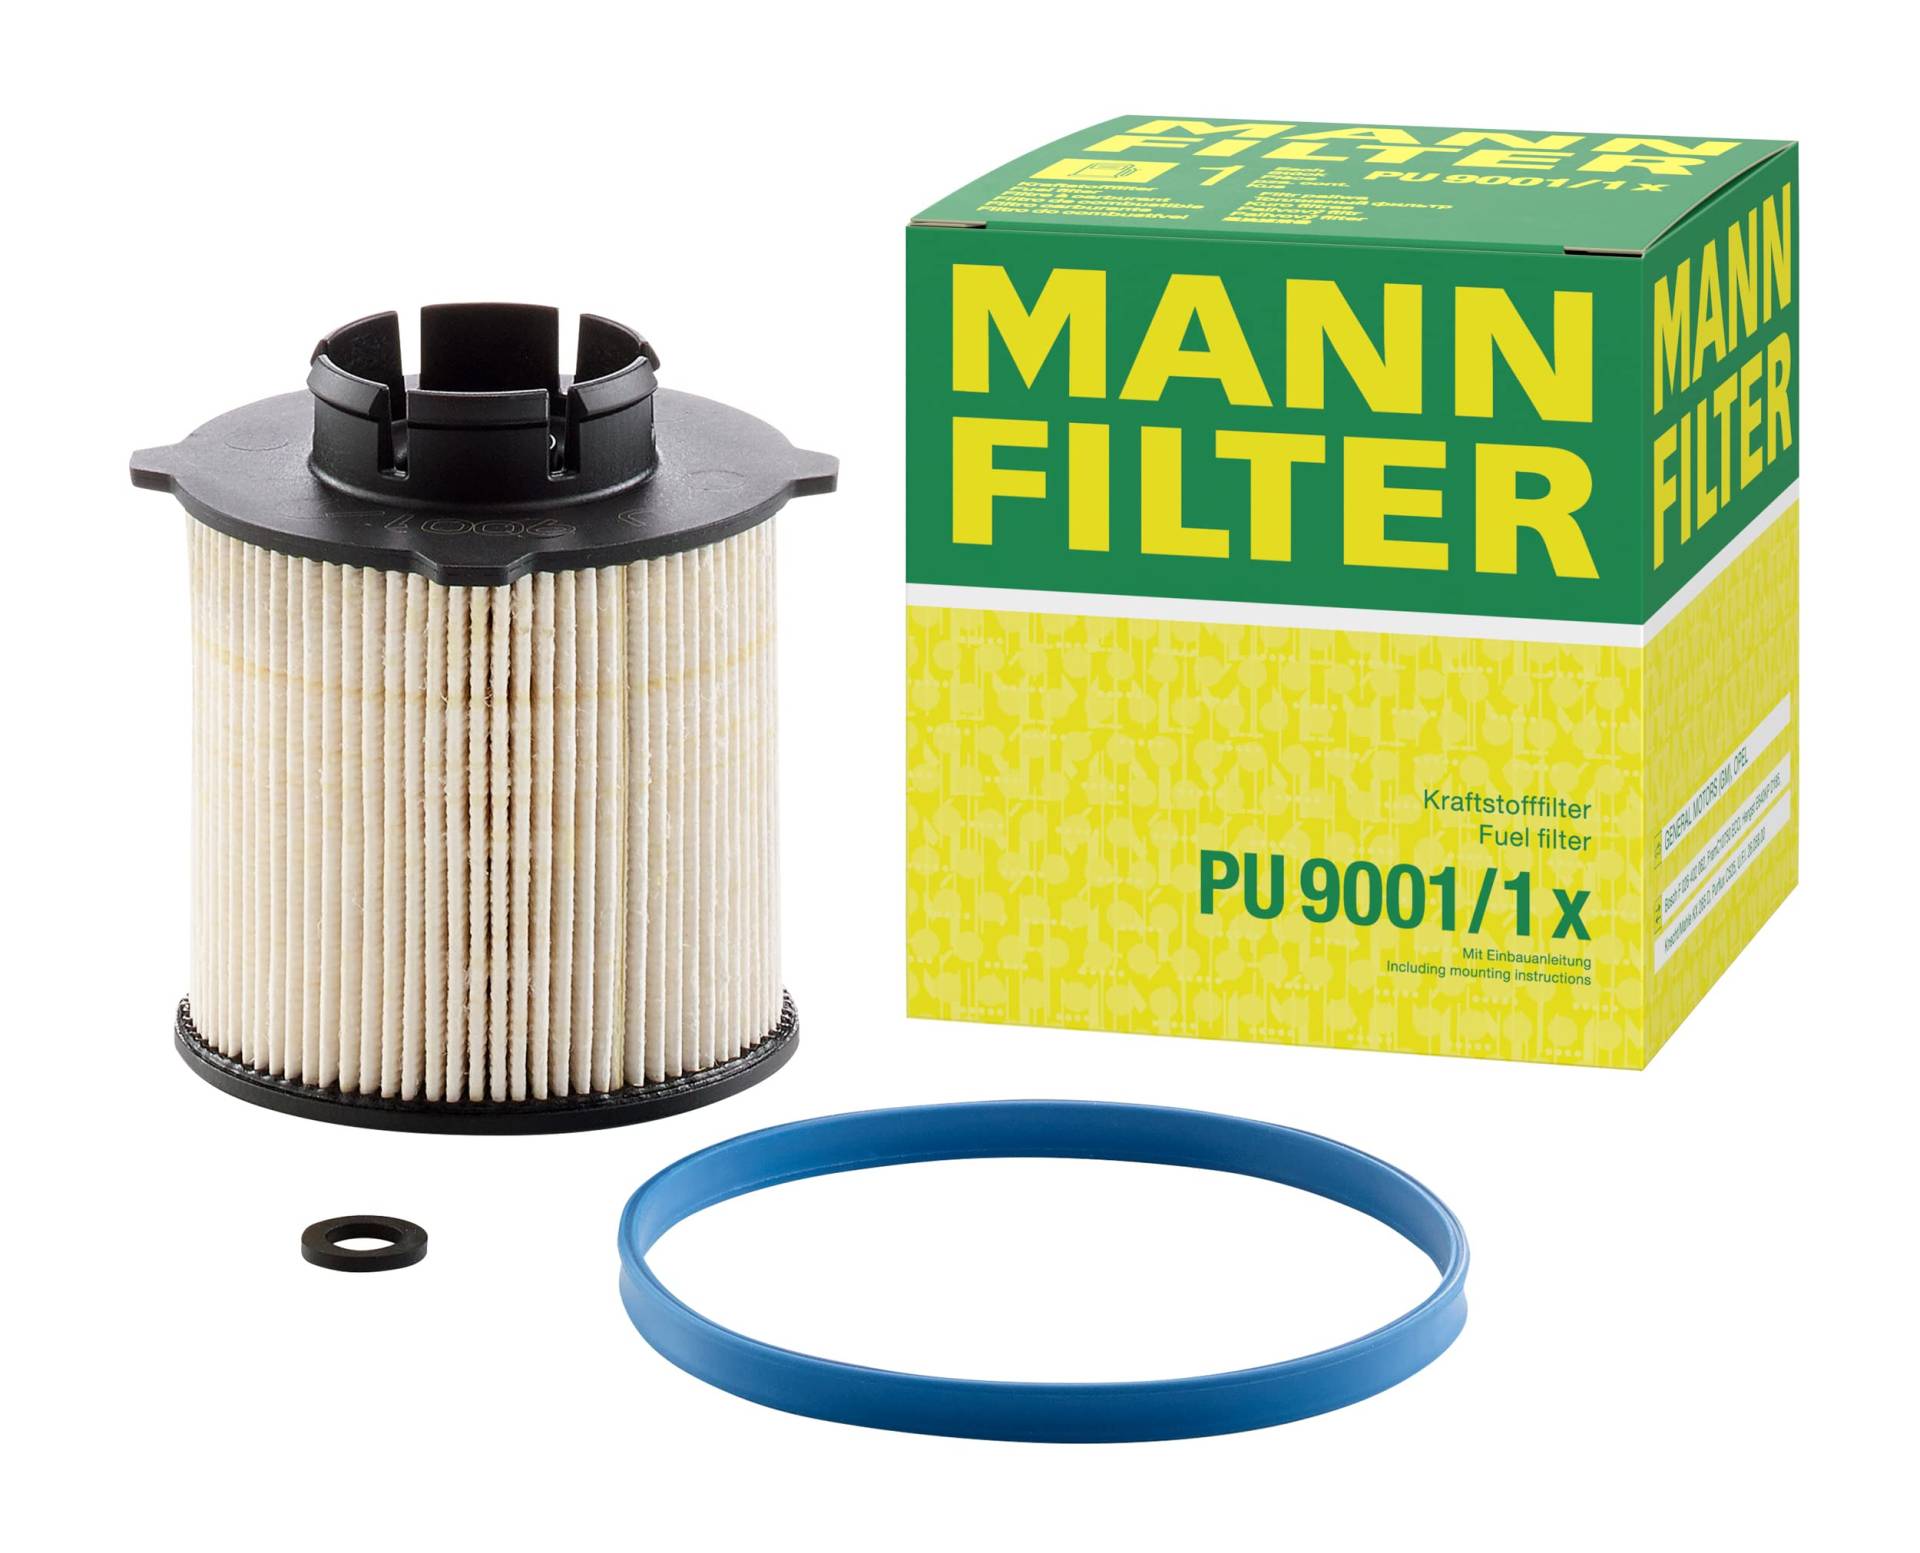 MANN-FILTER PU 9001 X Kraftstofffilter – Kraftstofffilter Satz mit Dichtung / Dichtungssatz – Für PKW von MANN-FILTER